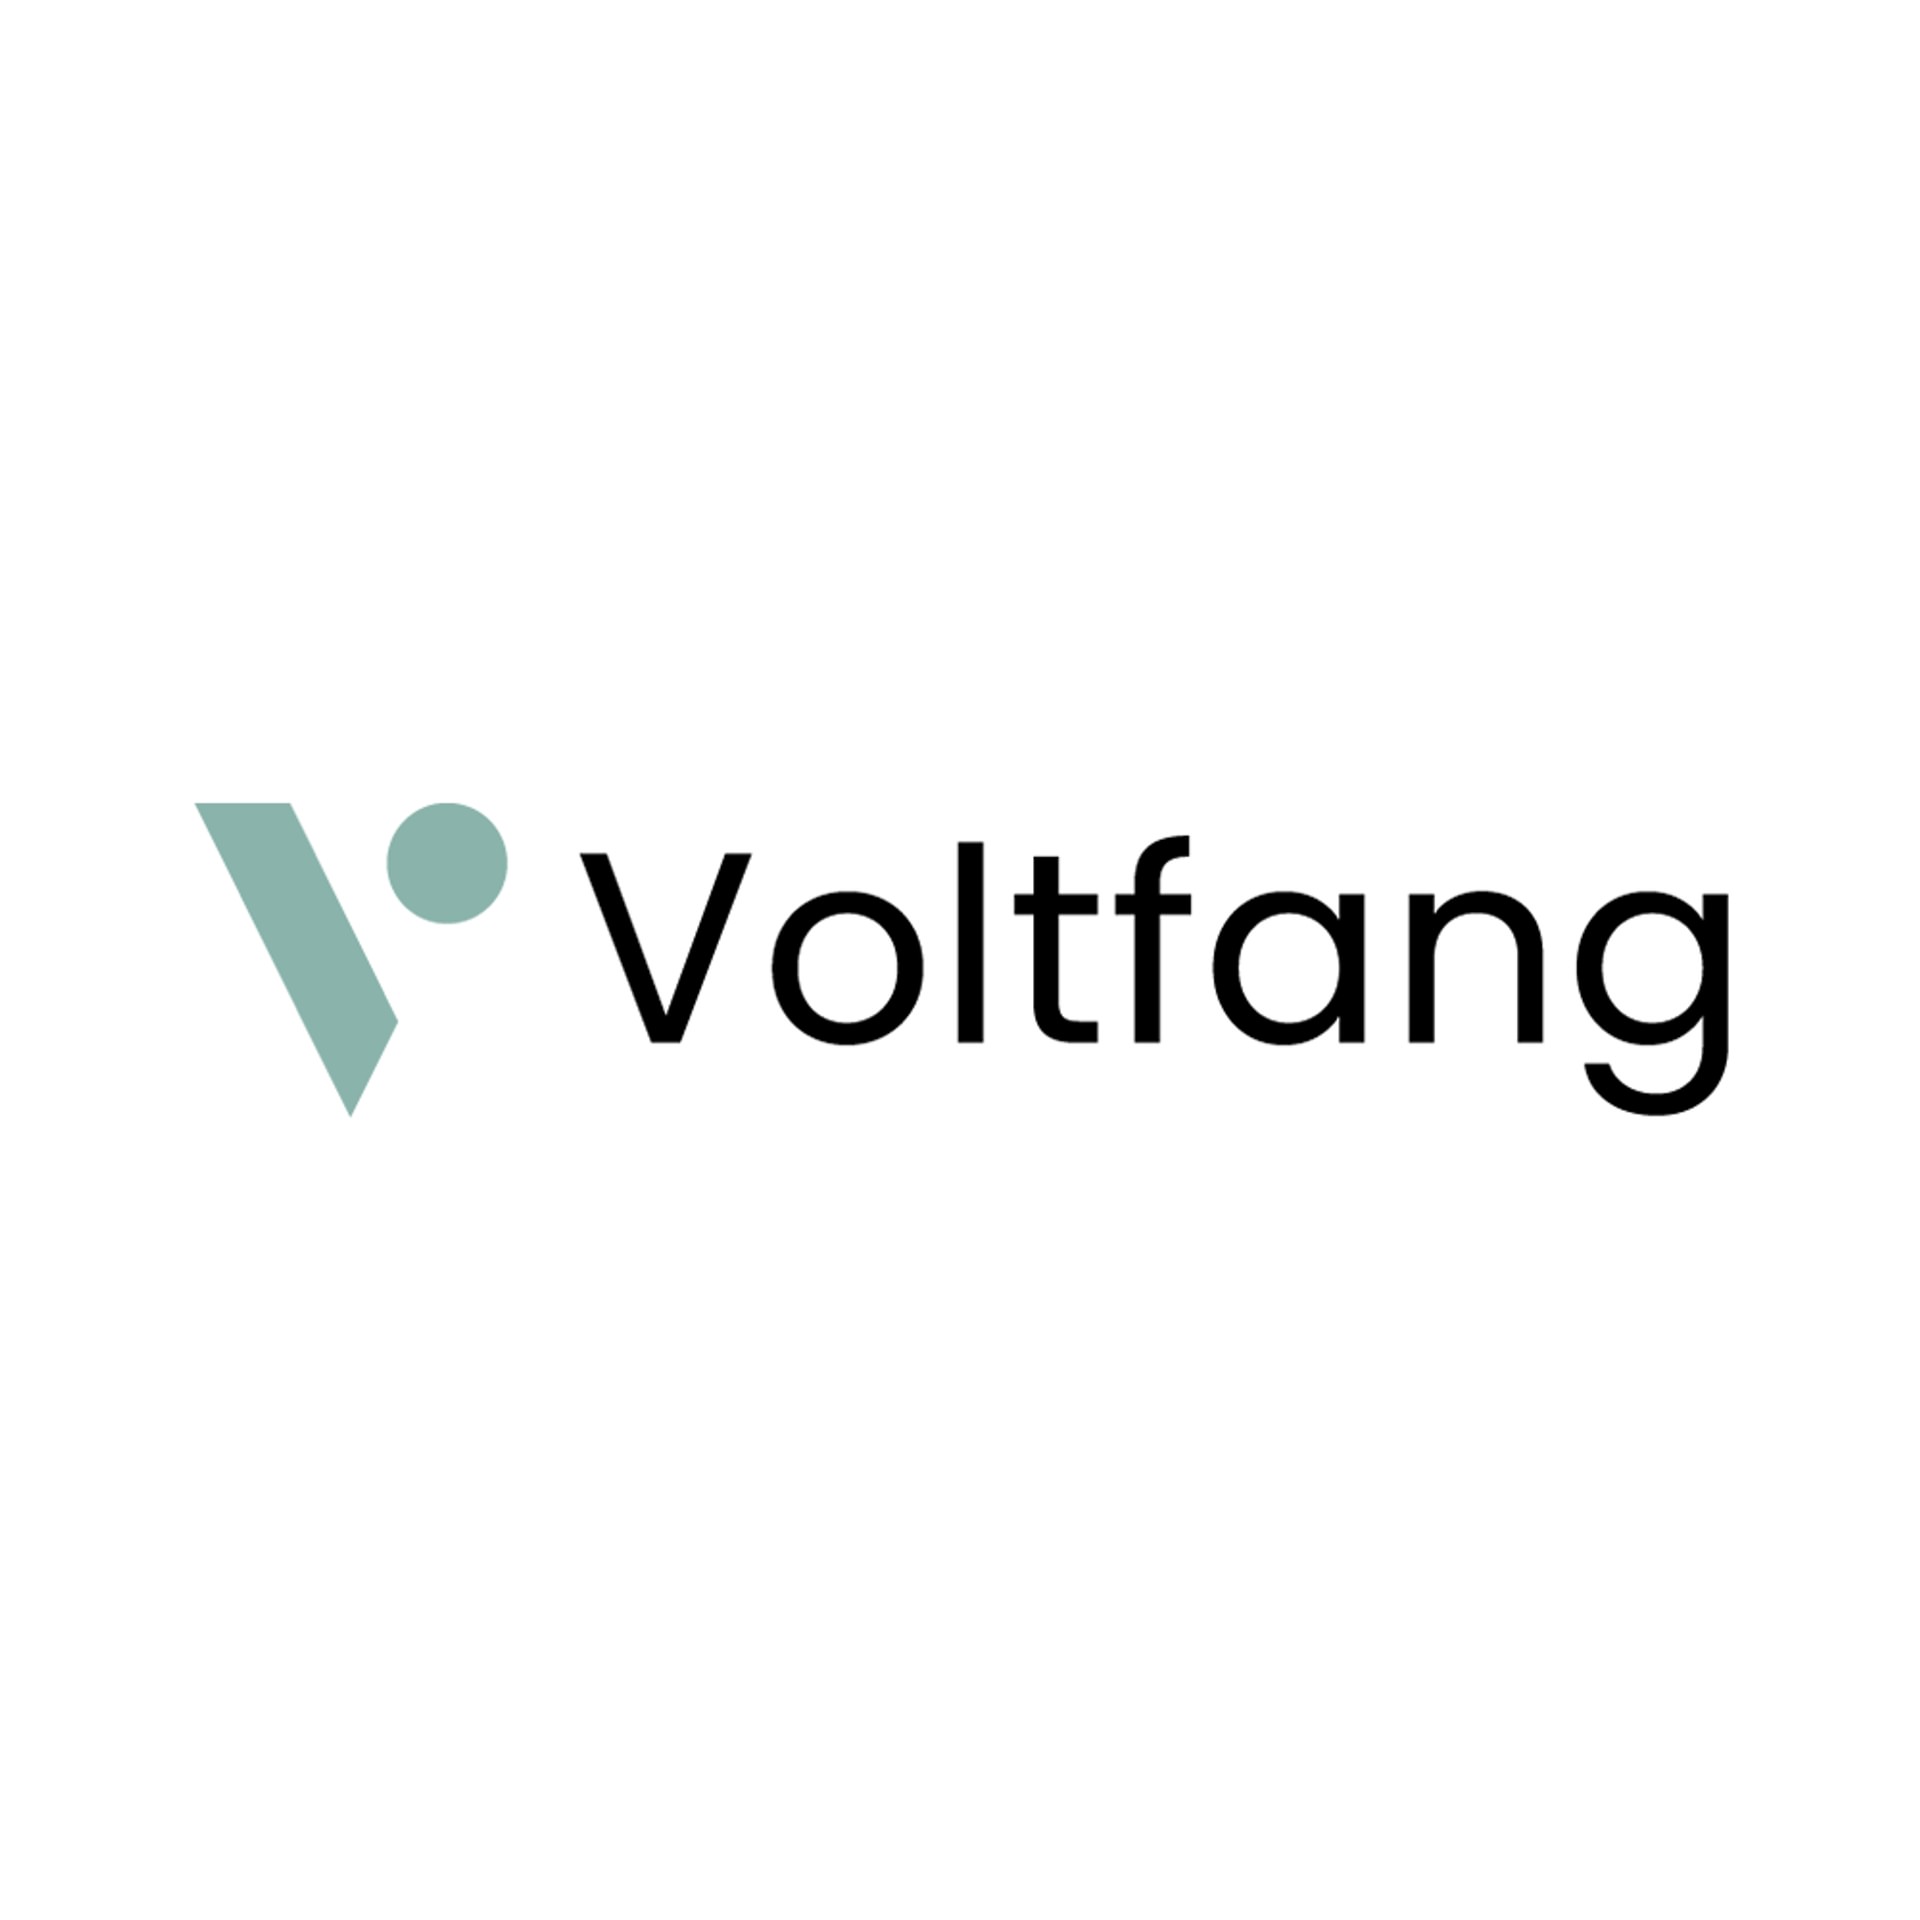 Voltfang website